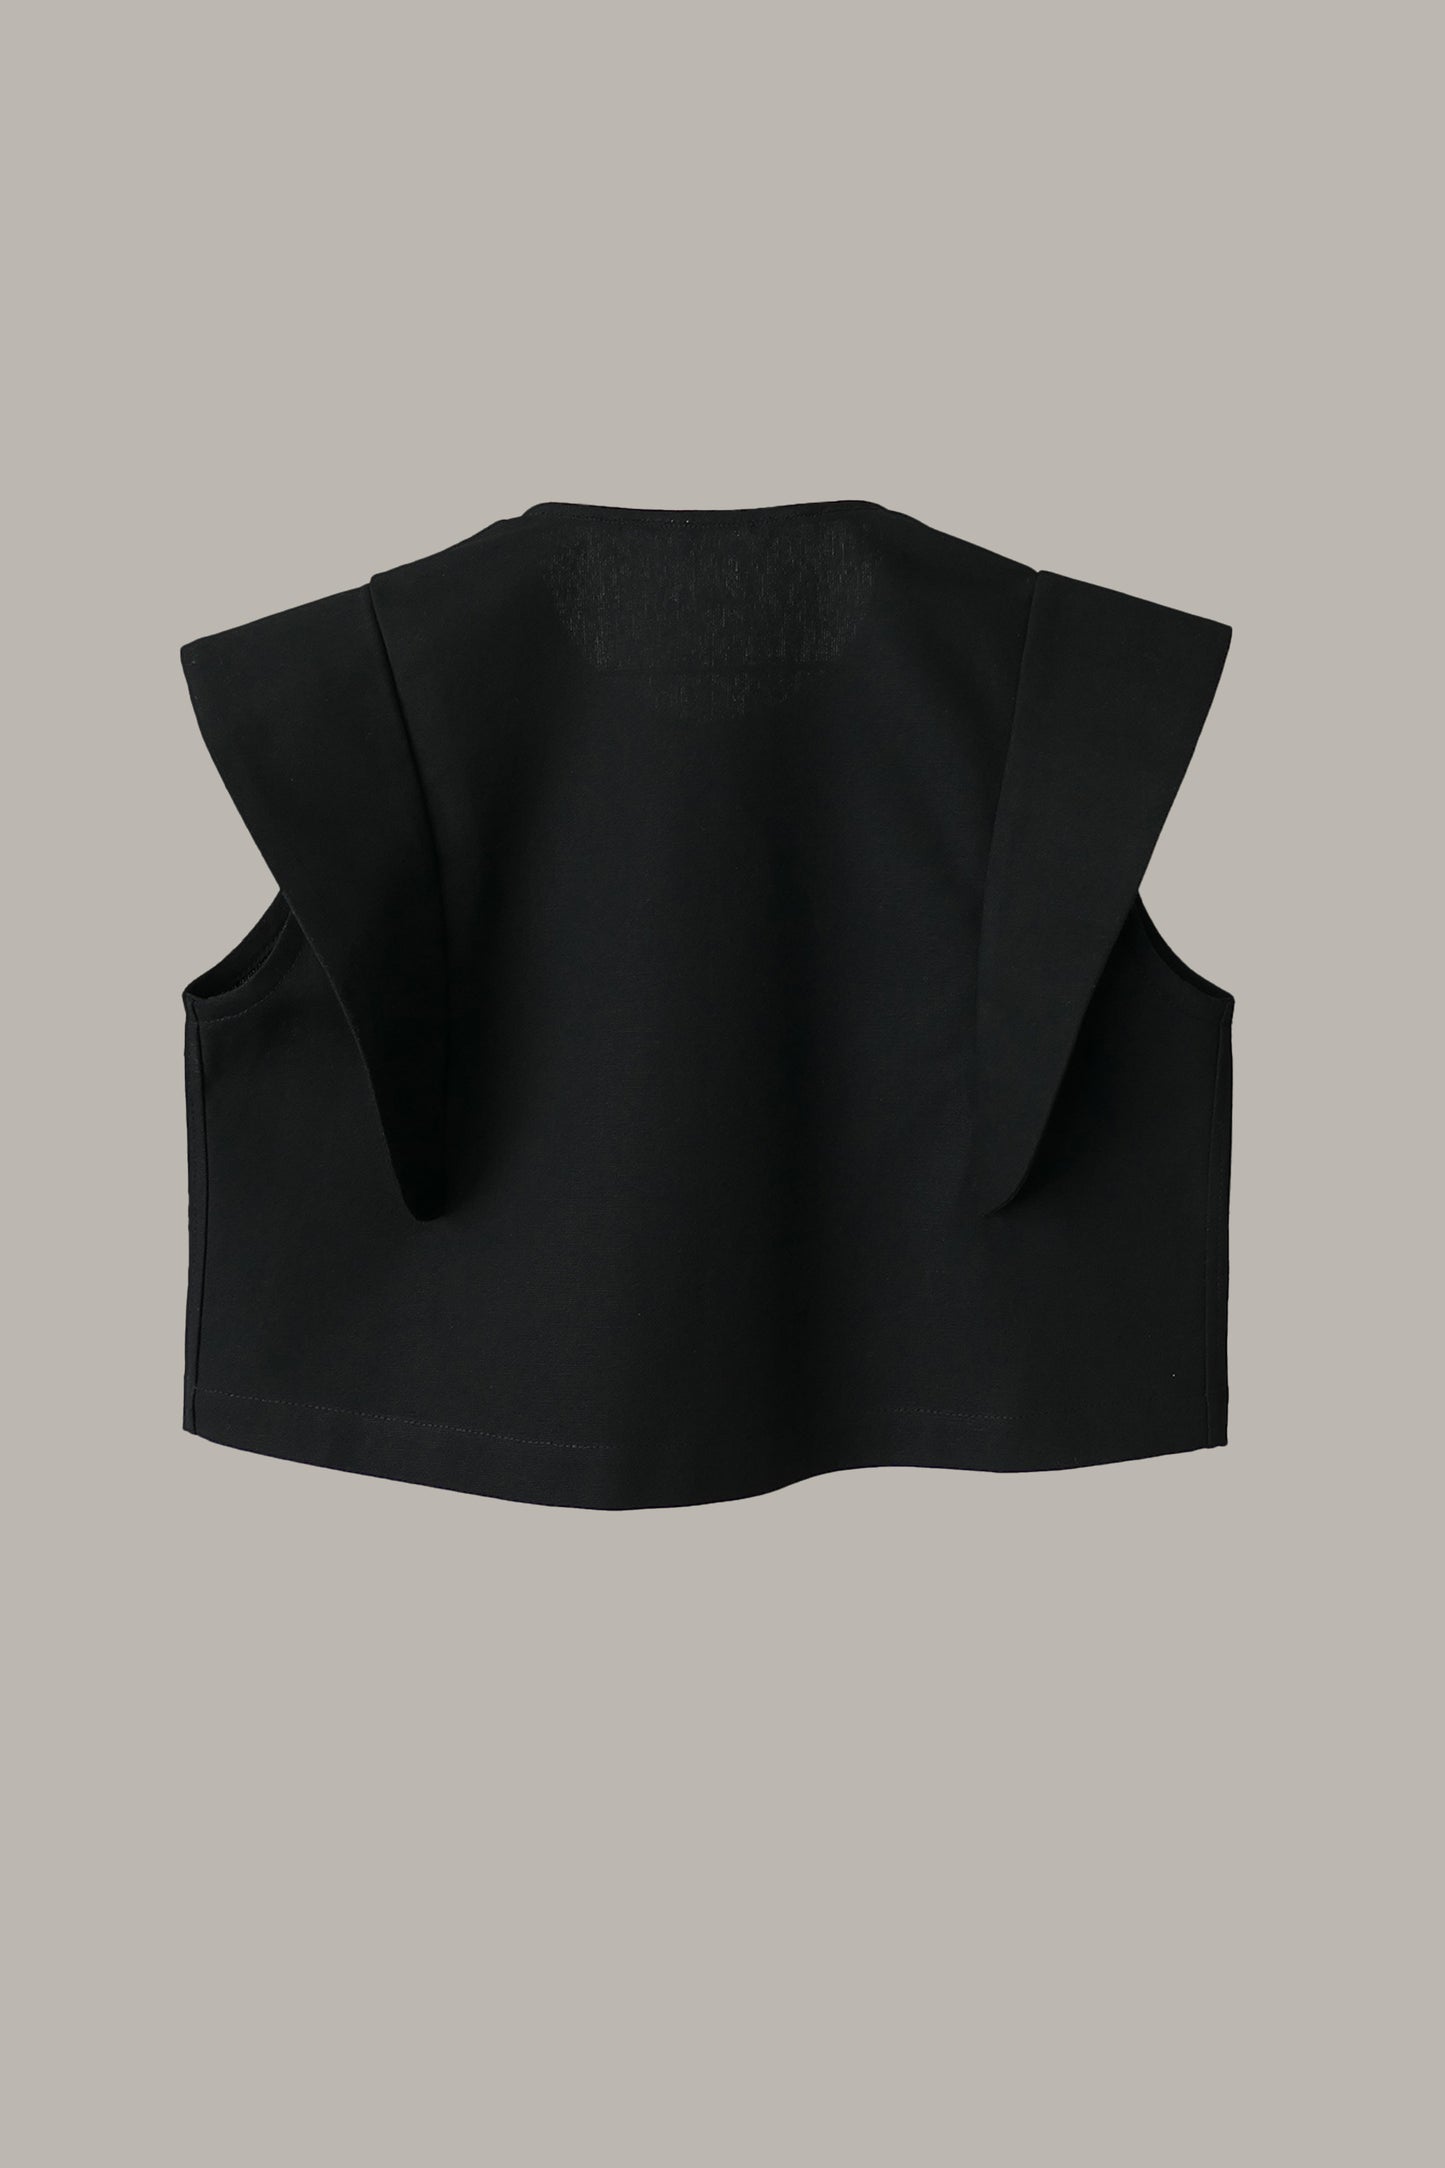 Hapi Vest Black {Made to Order}